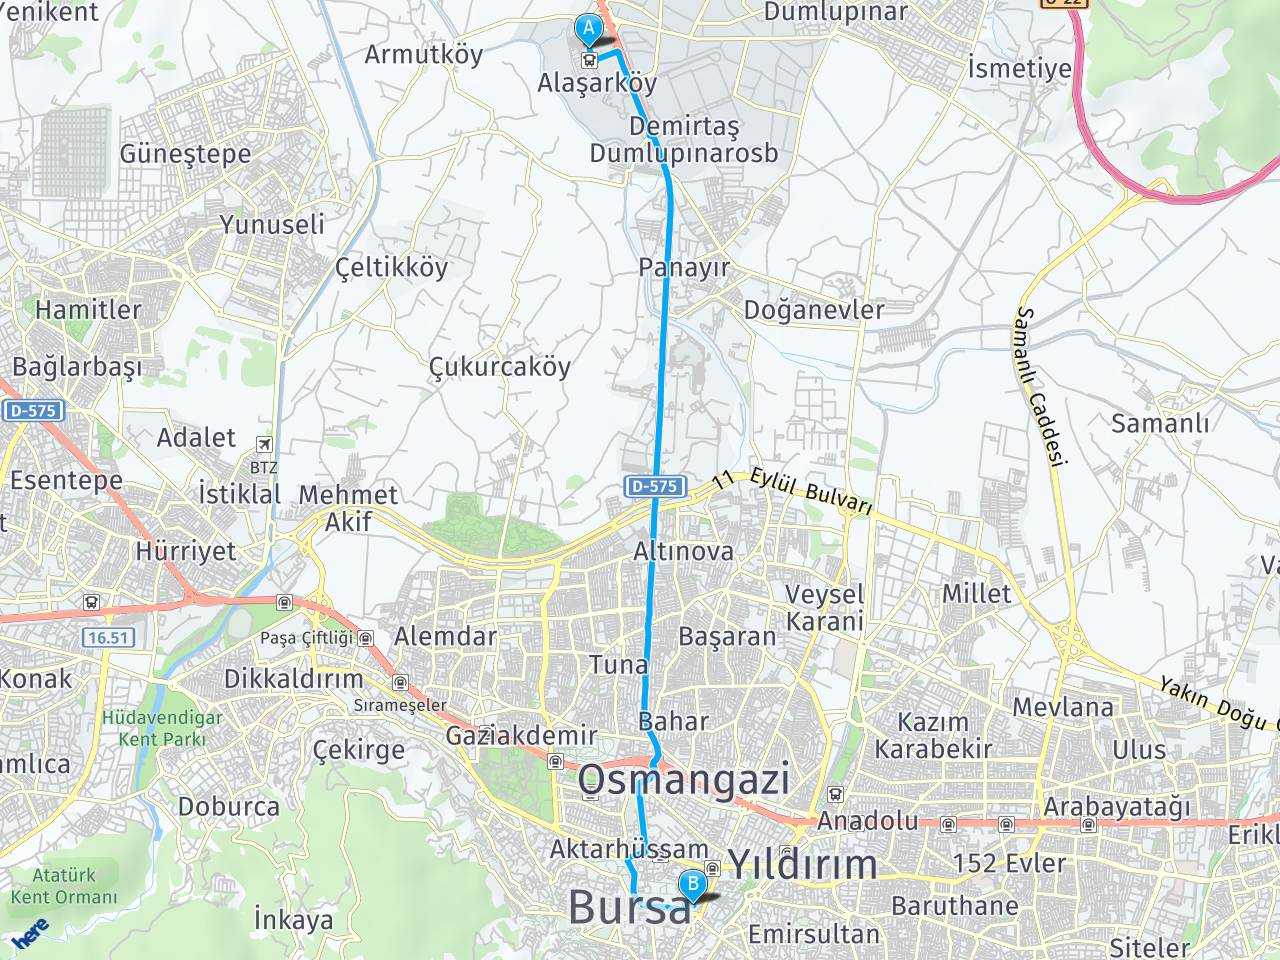 Bursa Otobüs Terminal Bursa Heykel haritası